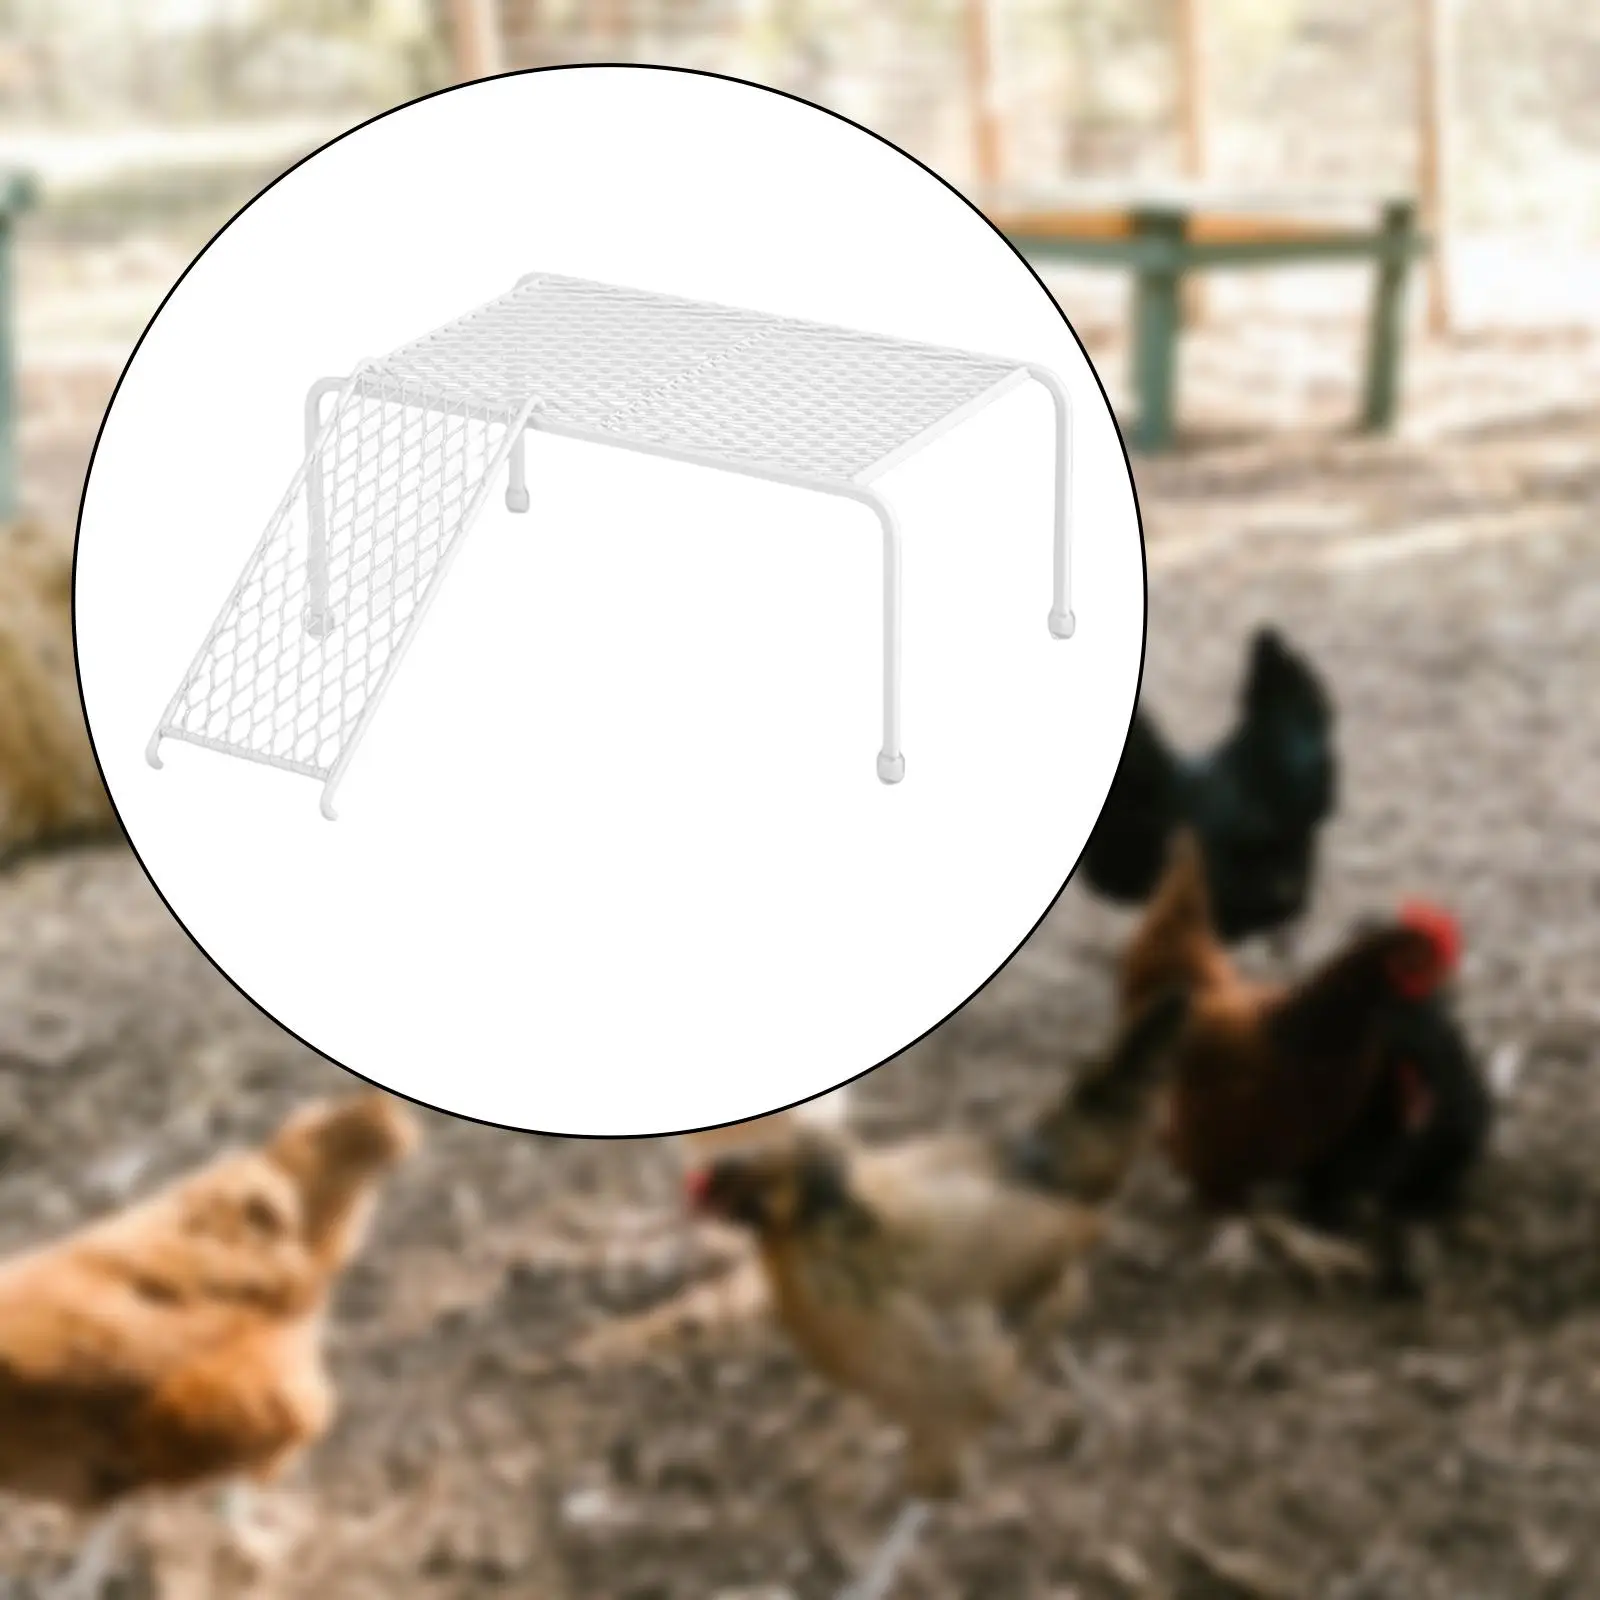 Stainless Steel Farmhouse Storage Rack Chicken Platform for Feeder Equipment